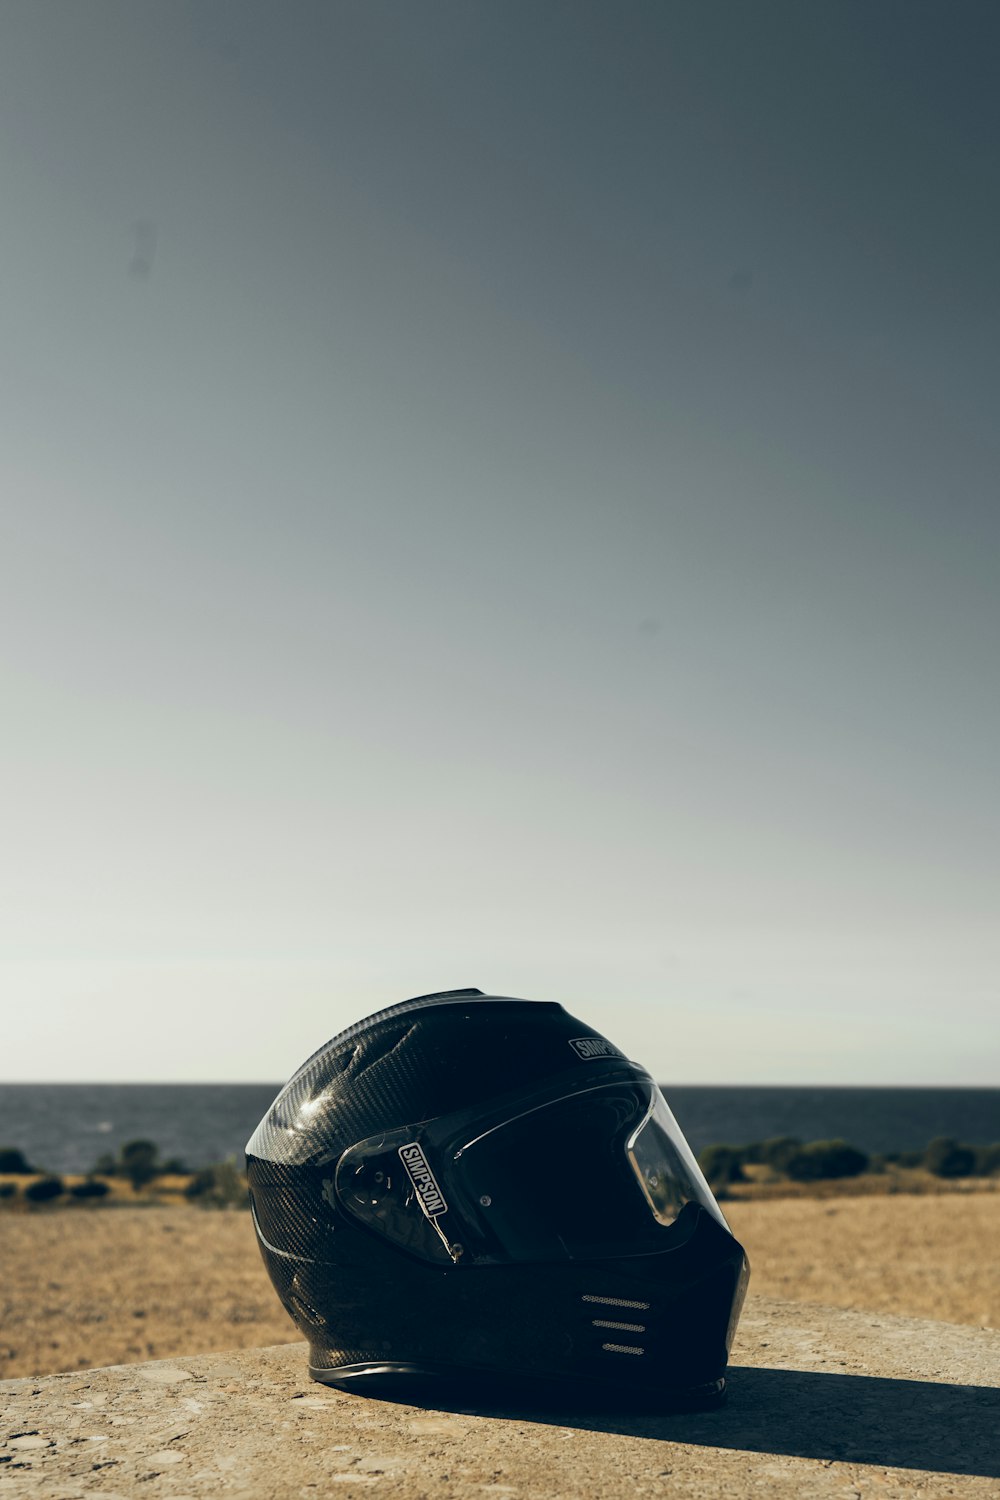 Casco de moto negro sobre arena marrón durante el día